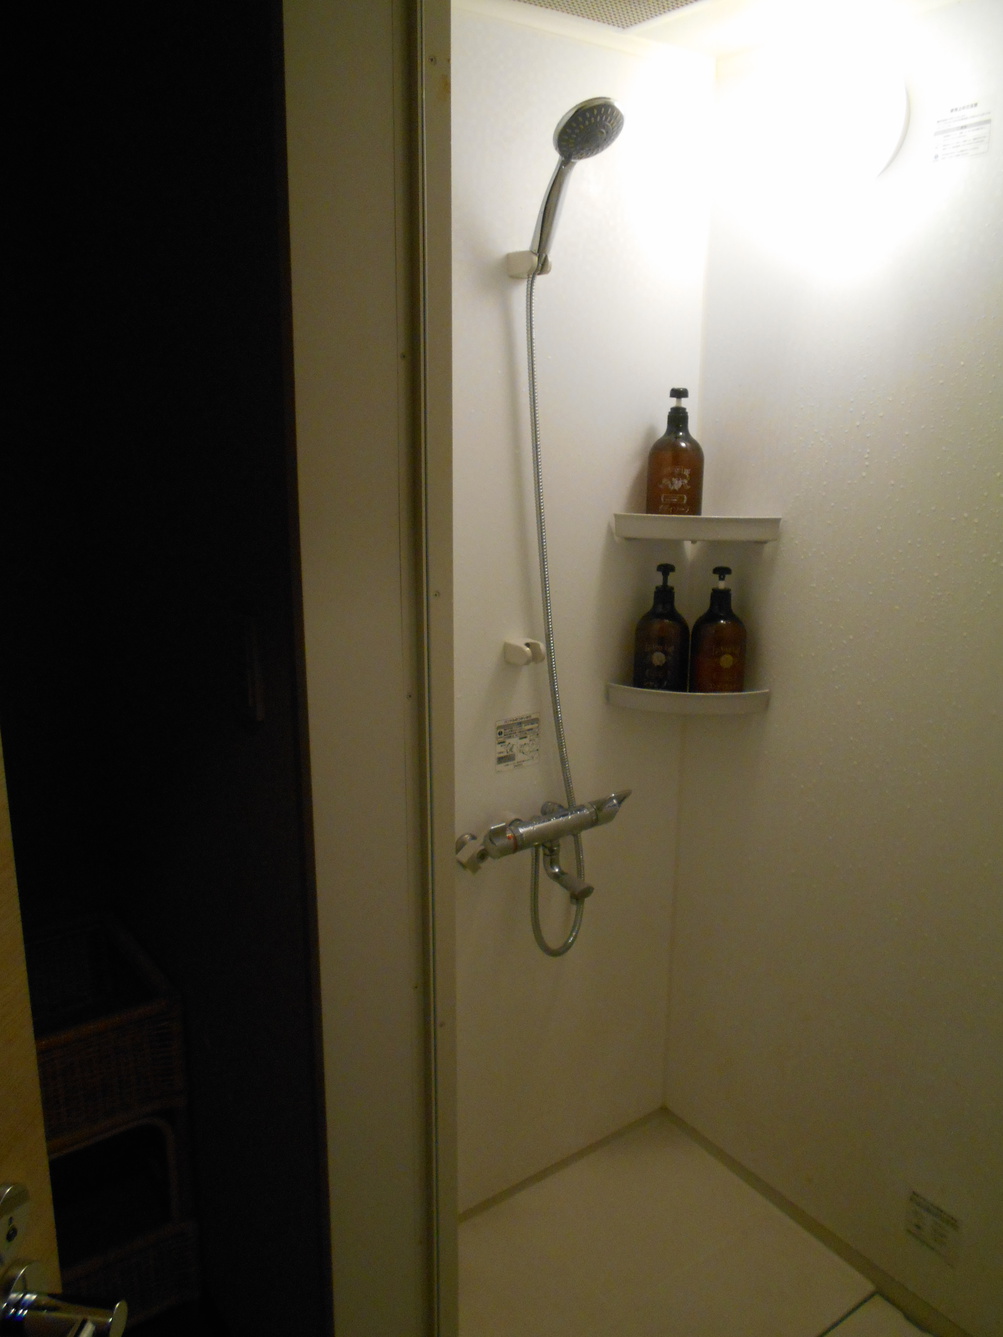 宿泊用シャワー室3階廊下他のお客様と共用でご利用していただきます。